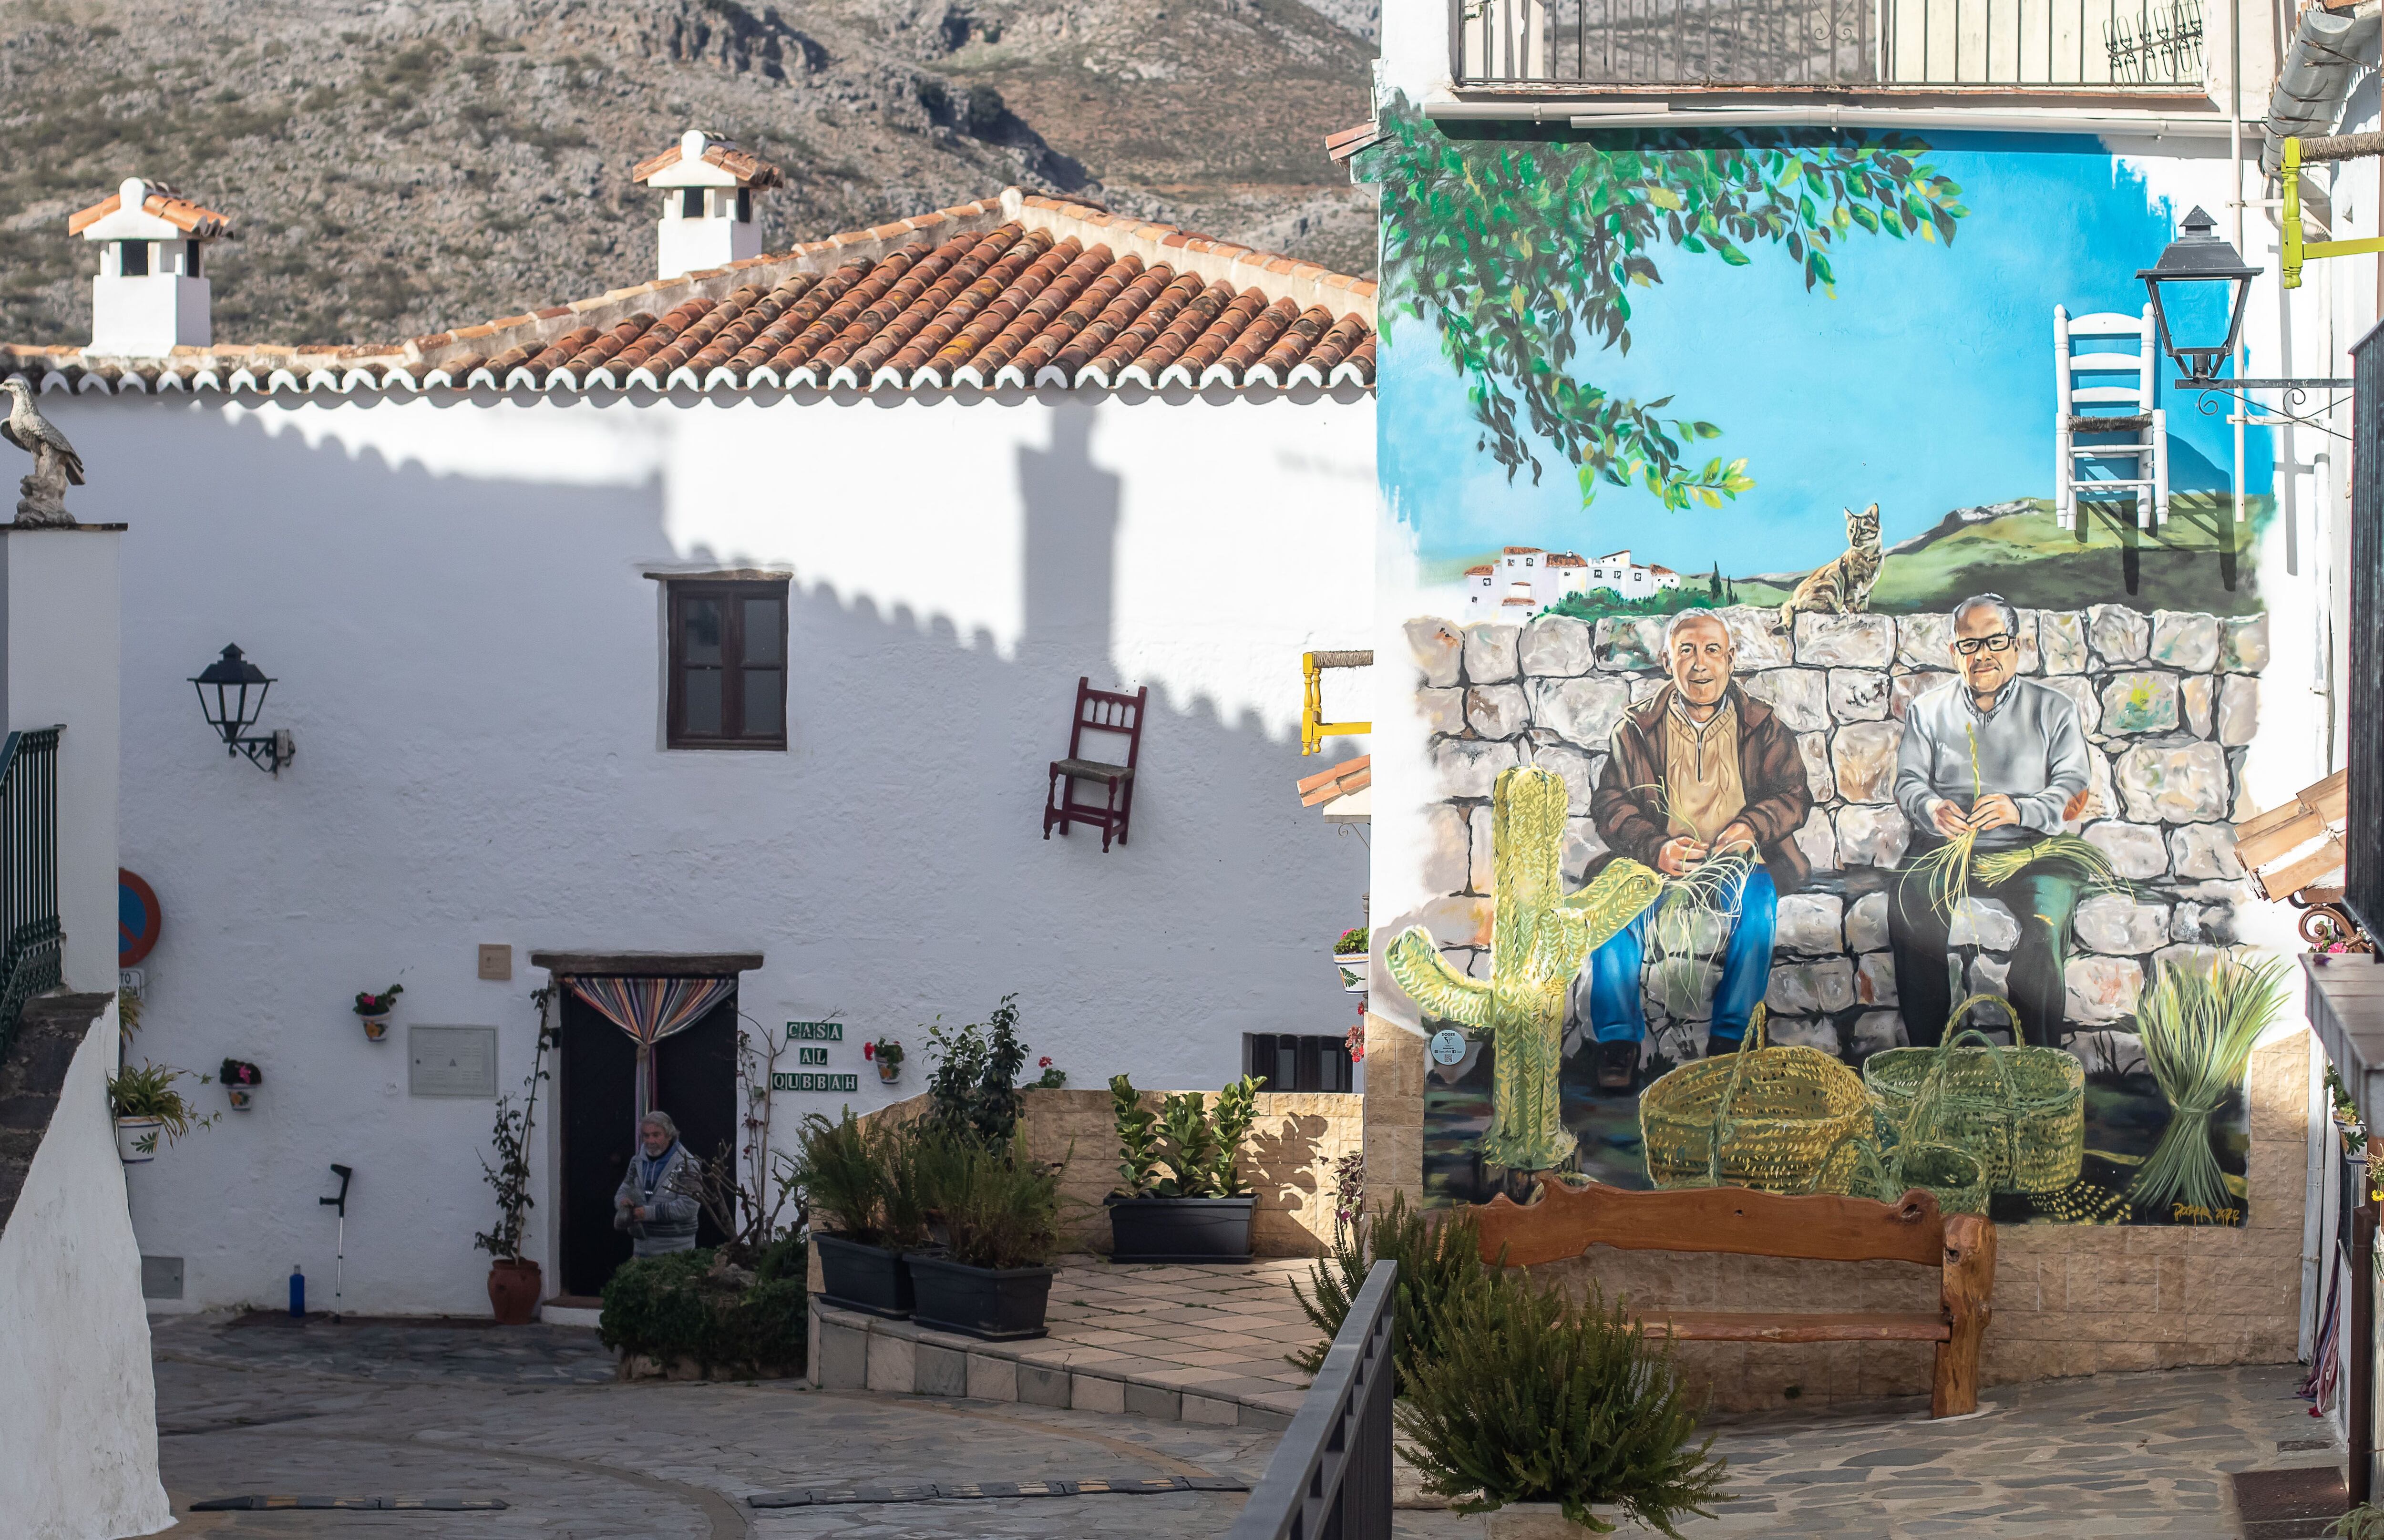 Mural dedicado a Mateo Peña y Vicente Sánchez en una de las calles de Parauta, en la que también se observan las sillas que decoran las vías de la localidad.